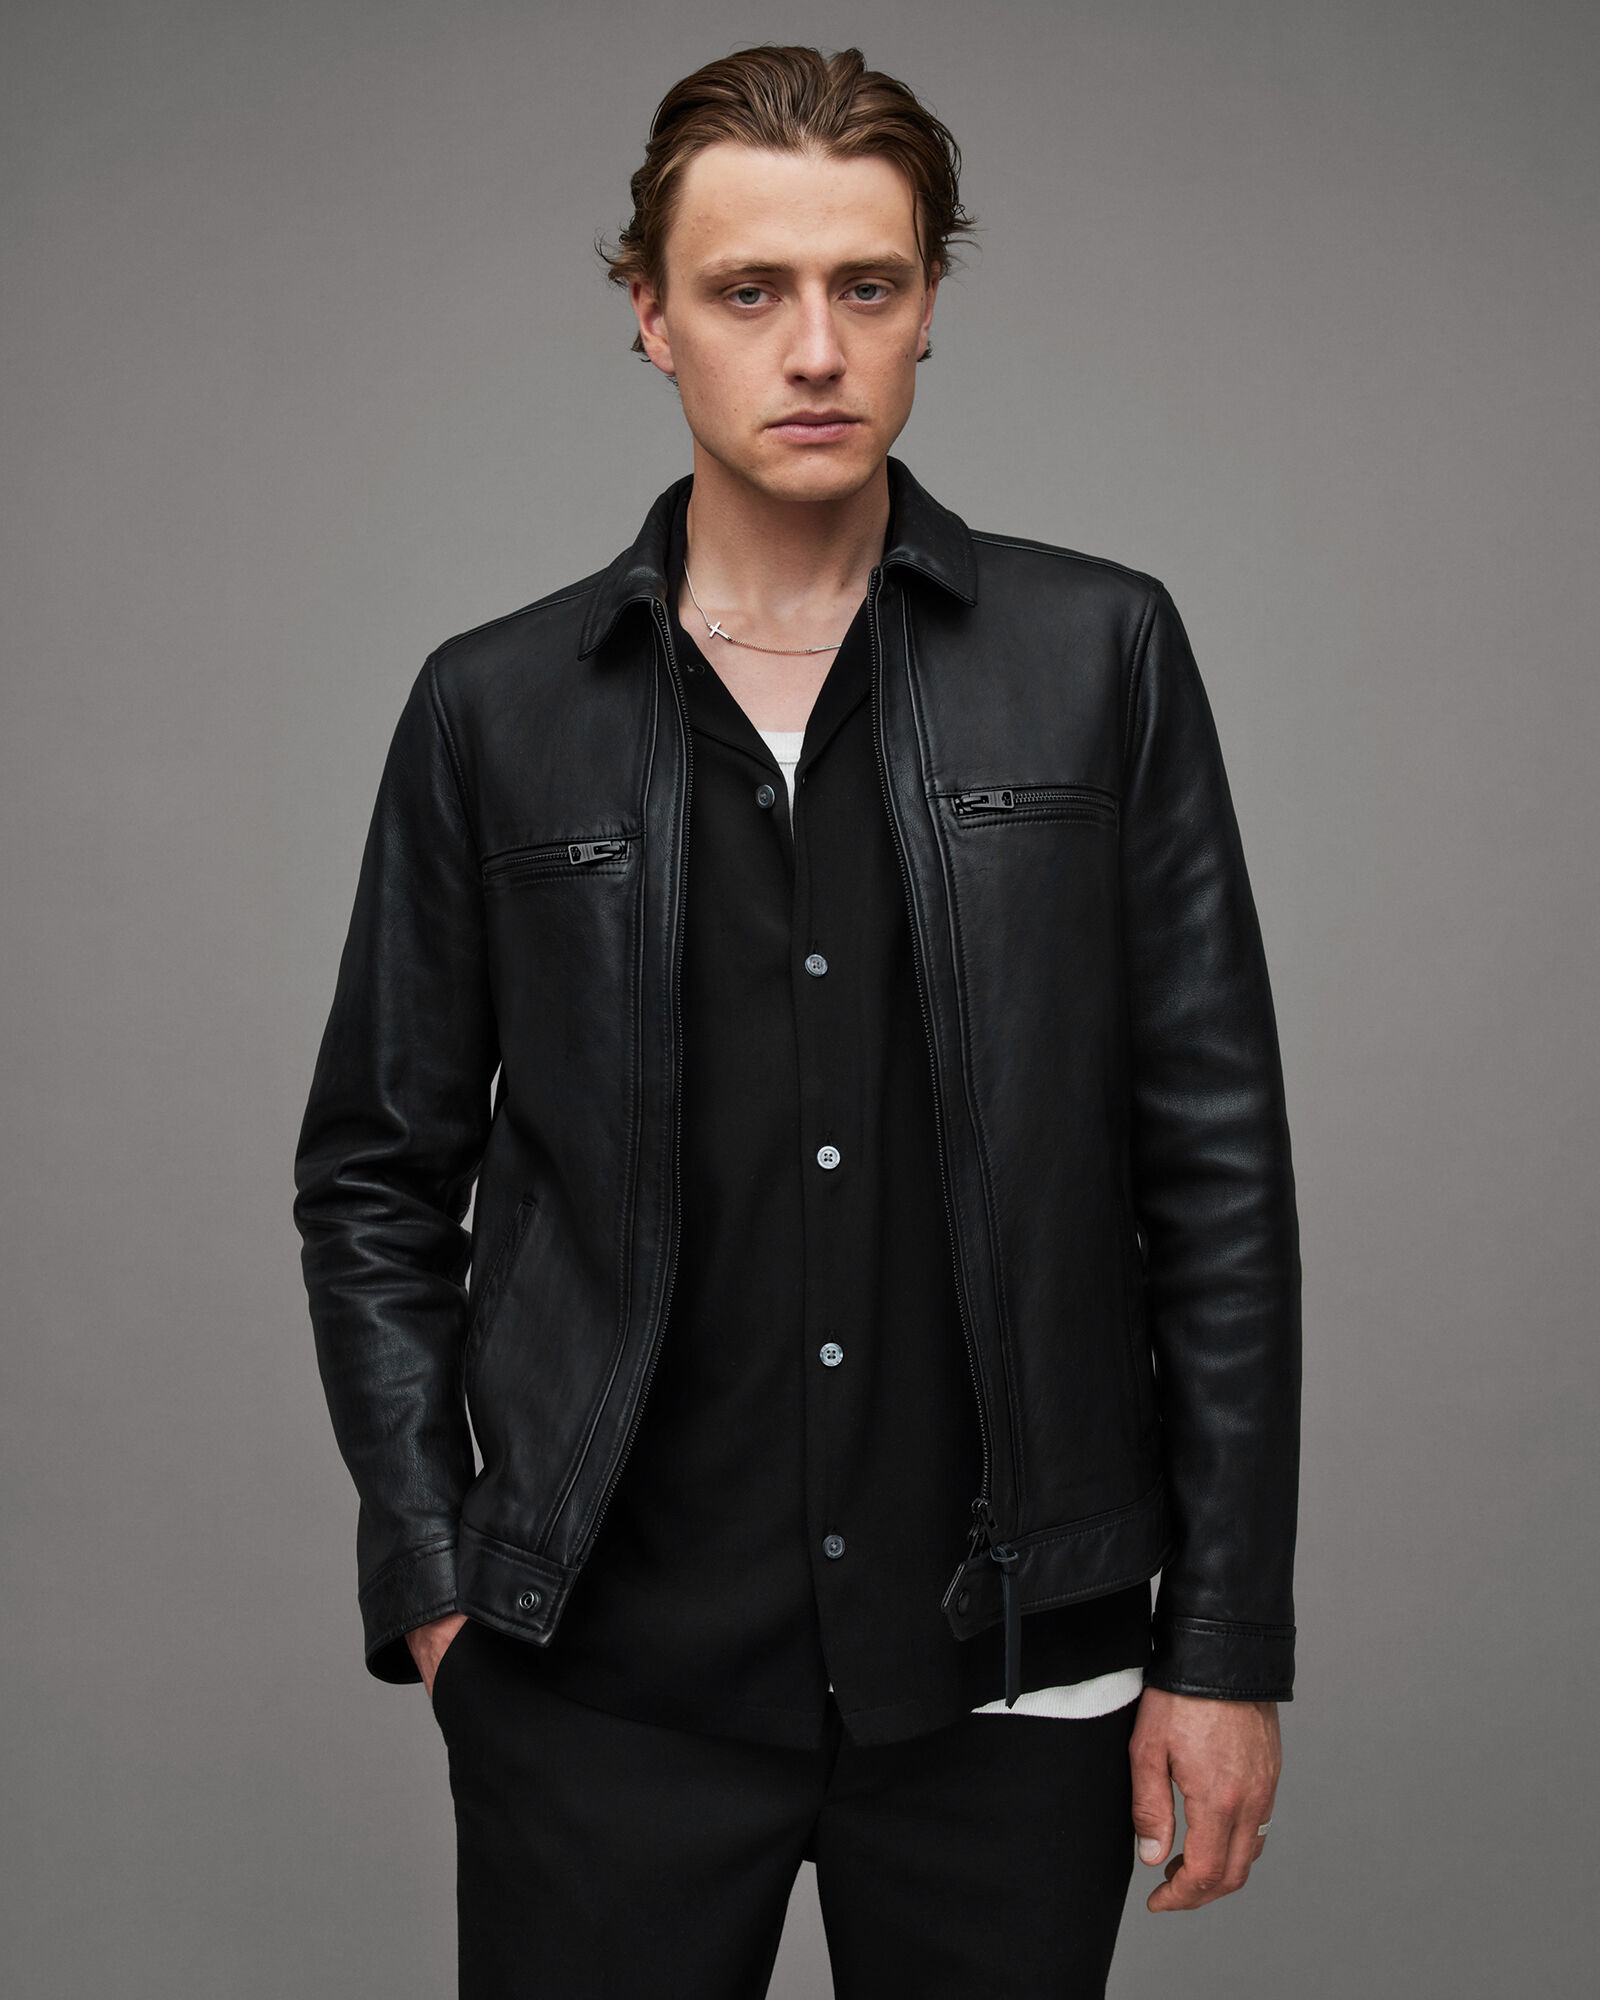 Men's Leather Jackets & Leather Coats | ALLSAINTS US